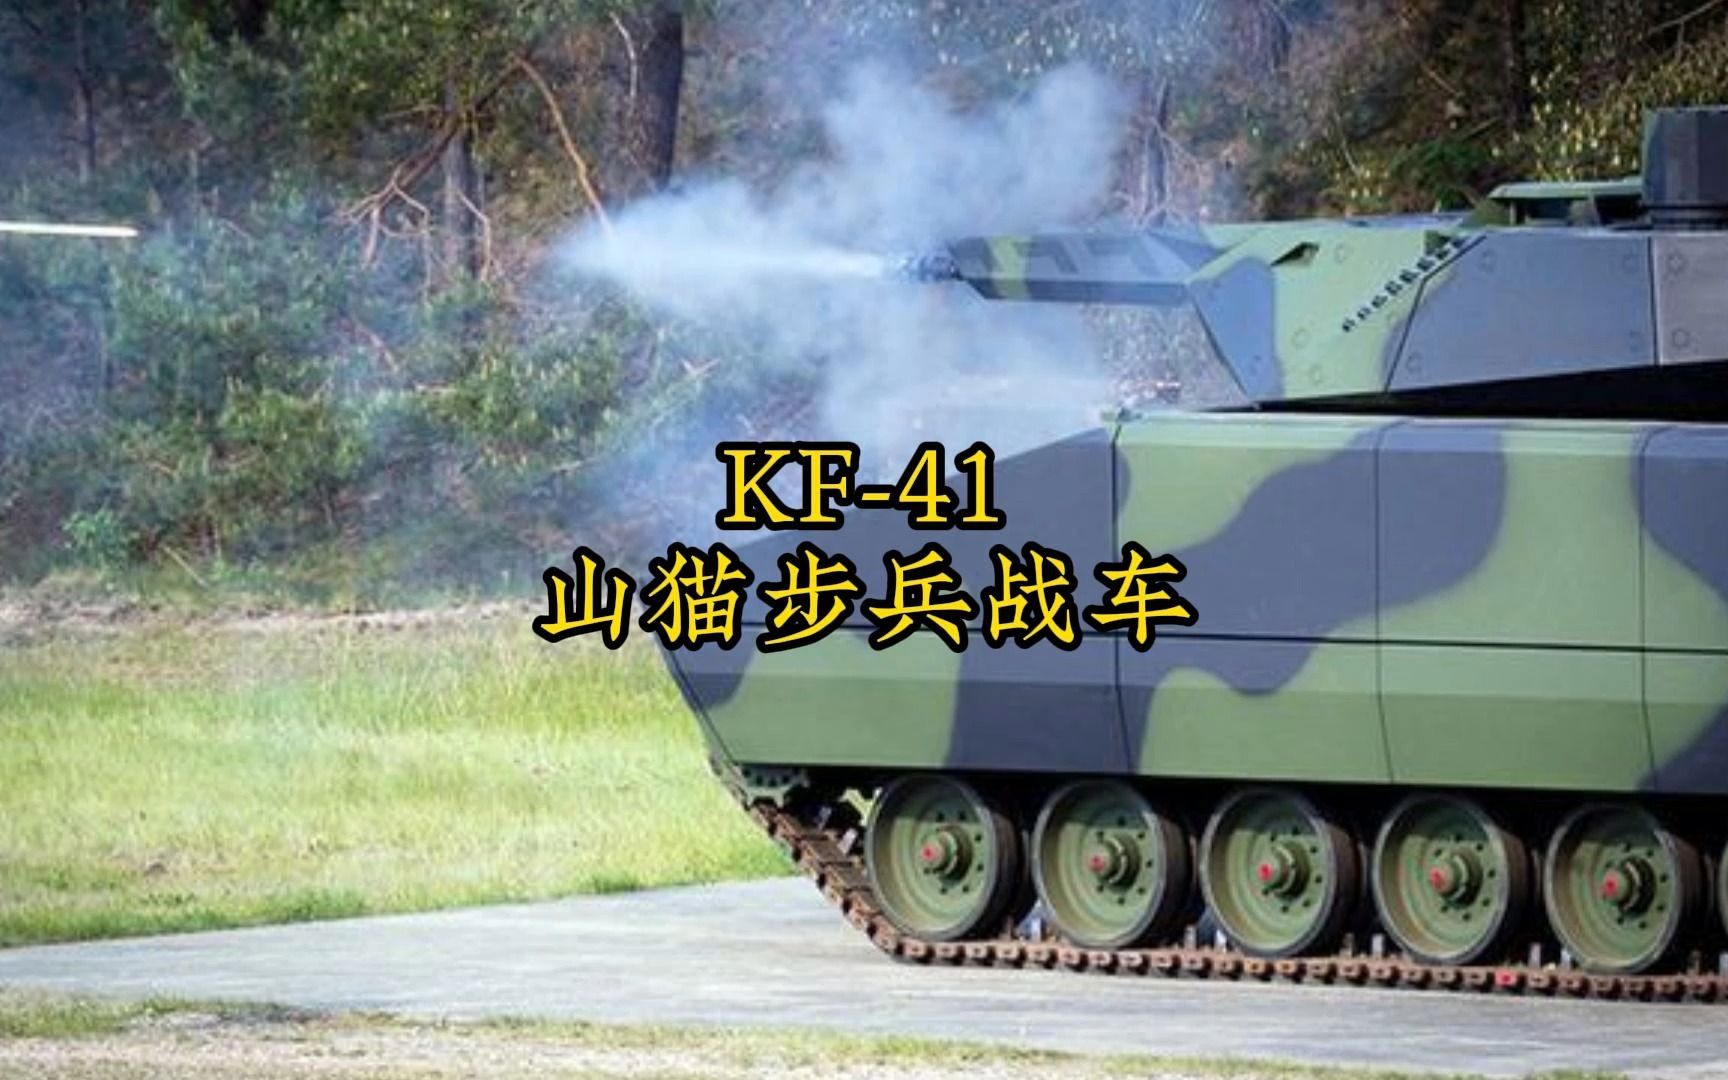 和坦克一样重的步兵战车-KF-41山猫